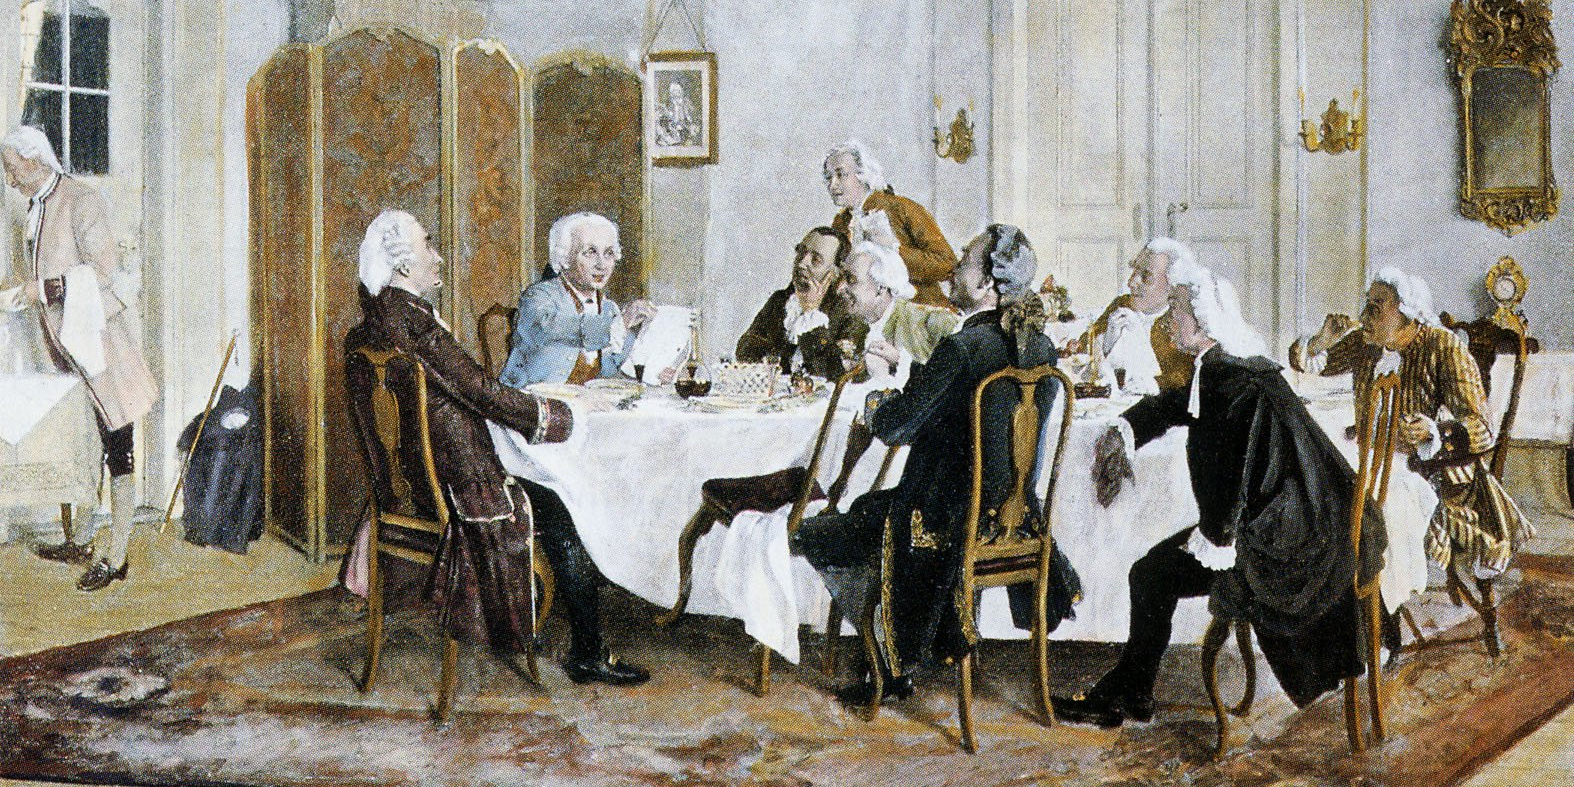 Картина «Кант с друзьями за обедом» кисти Эмиля Дерстлинга. Фото: общественное достояние